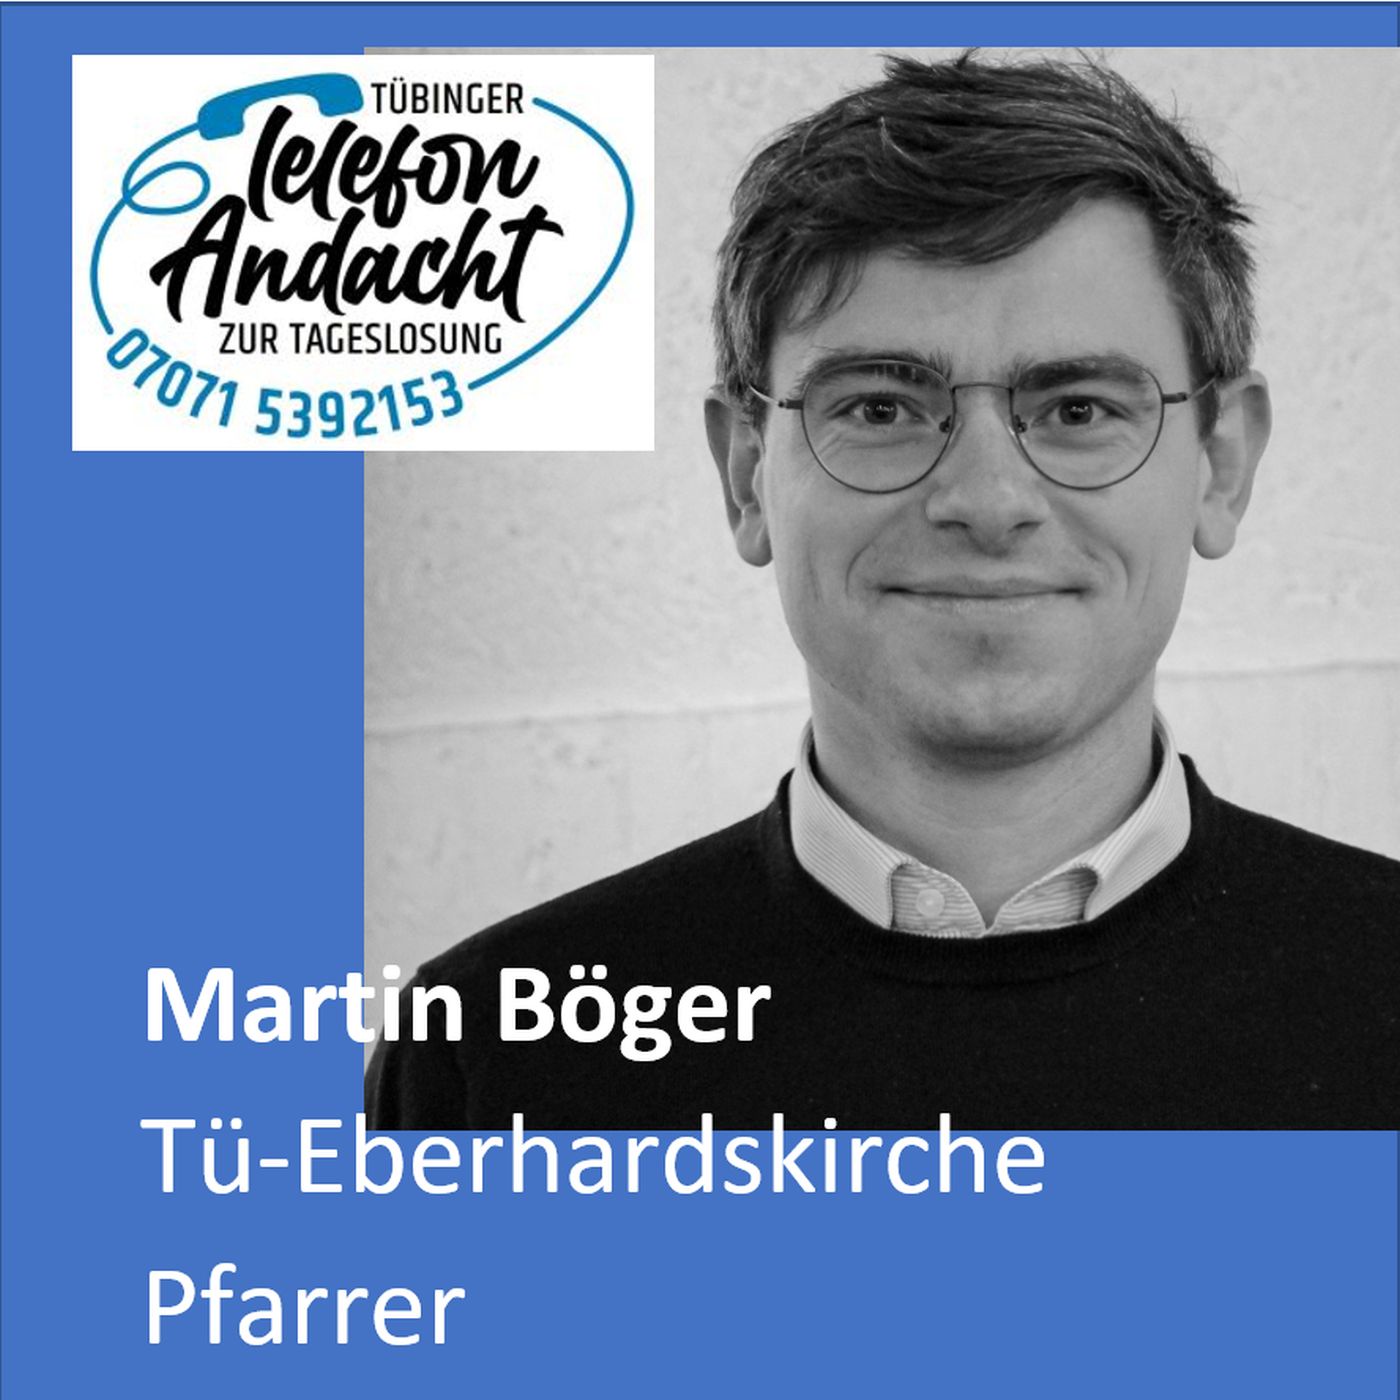 24 04 14 Martin Böger